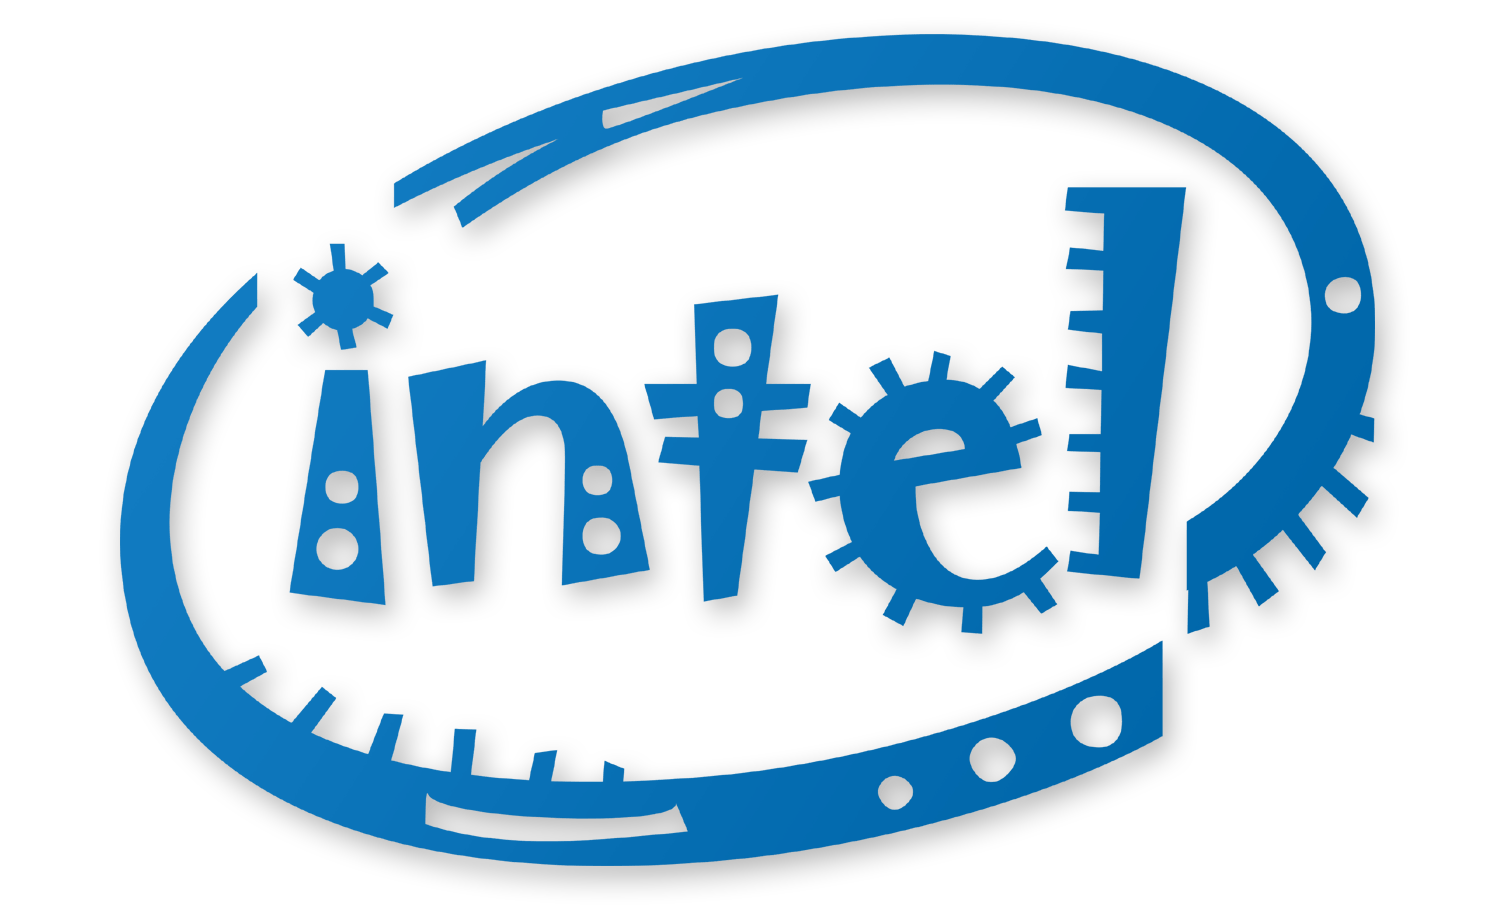 Intel Inside Logo - Intel Png Logo - Free Transparent PNG Logos